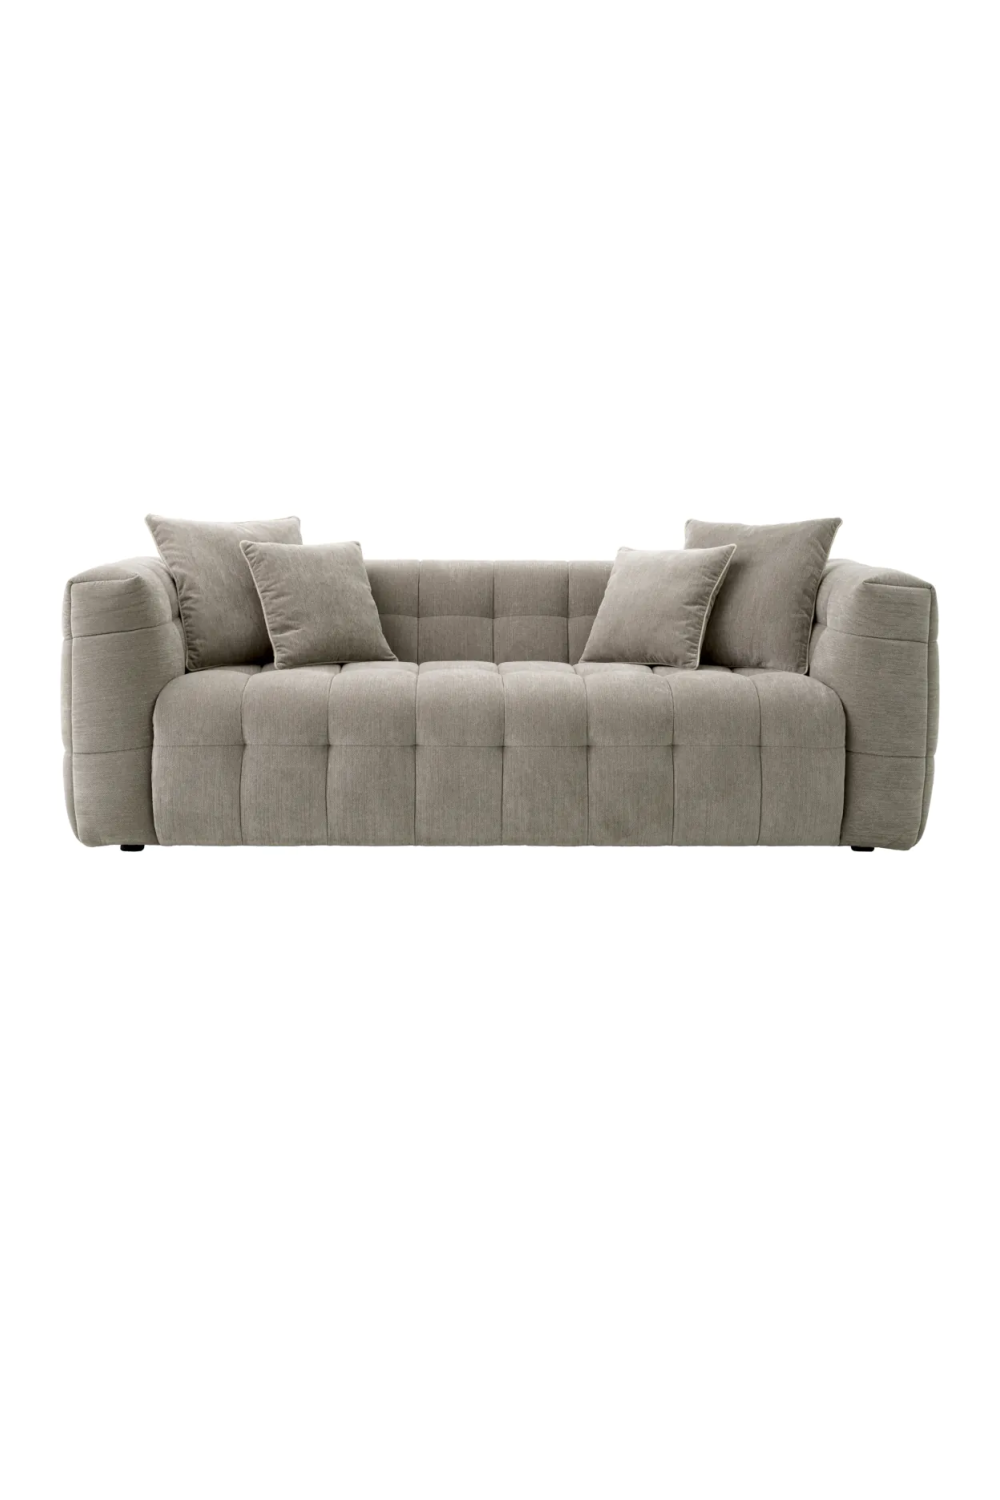 Tufted Modern Sofa | Eichholtz Breva | Oroa.com